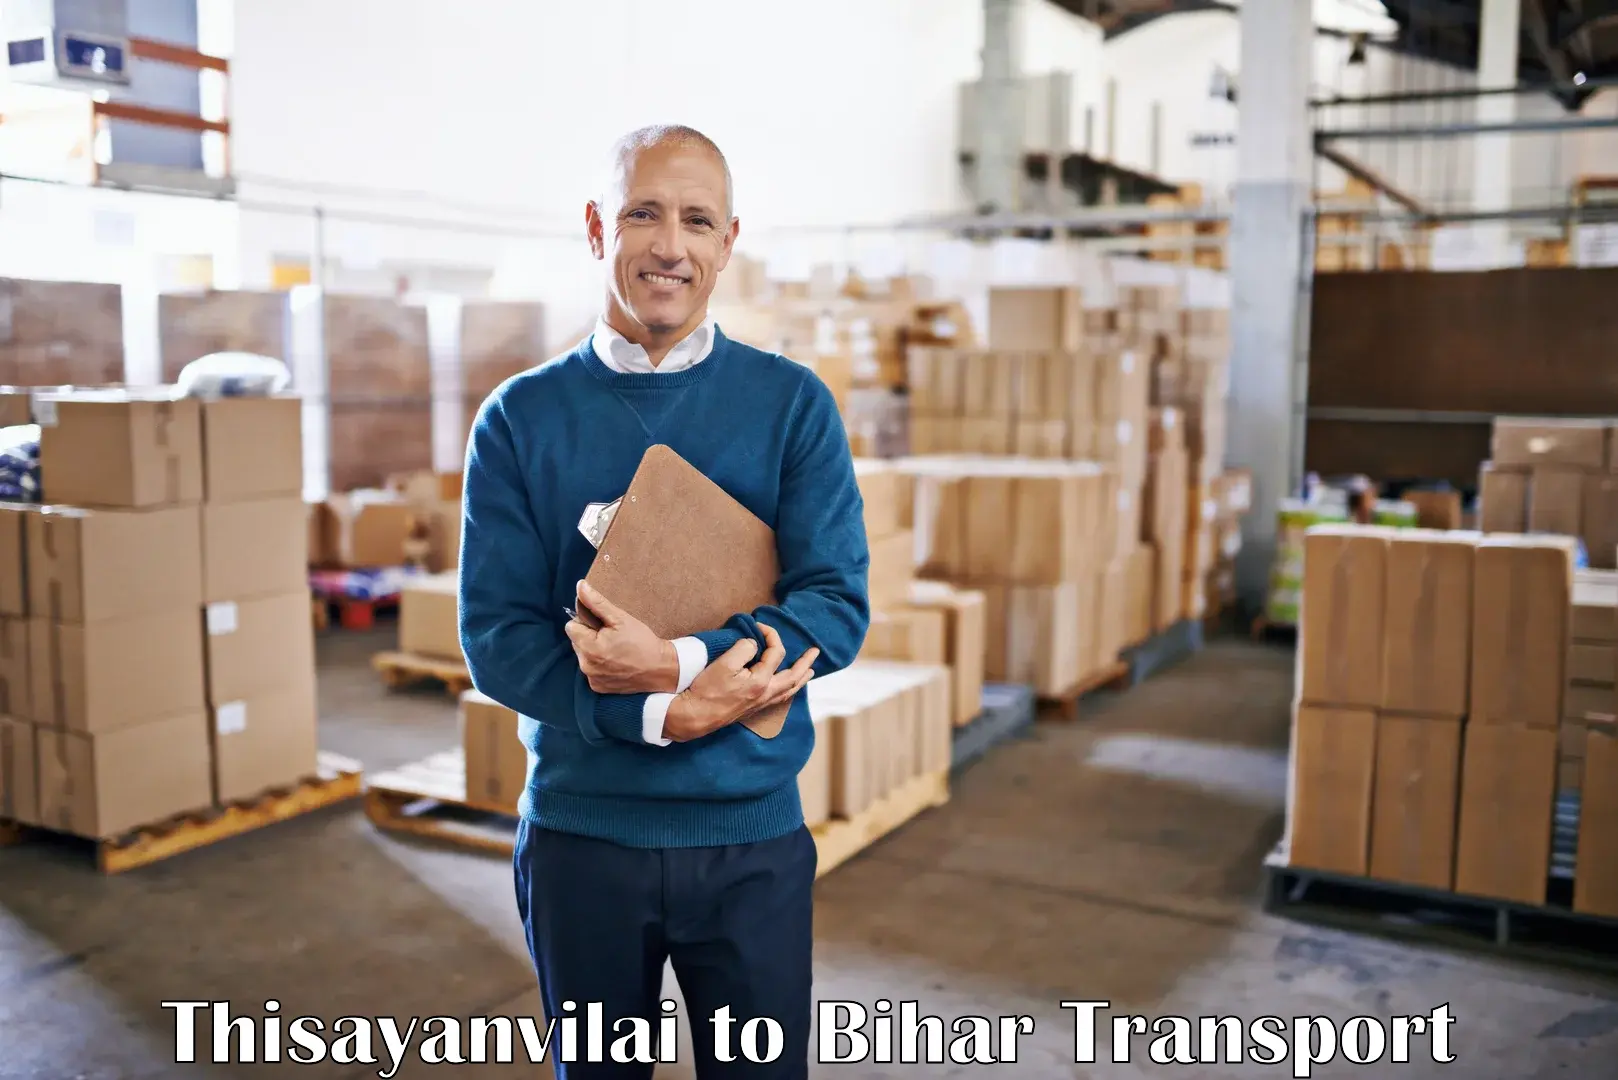 Shipping partner Thisayanvilai to Sudhani